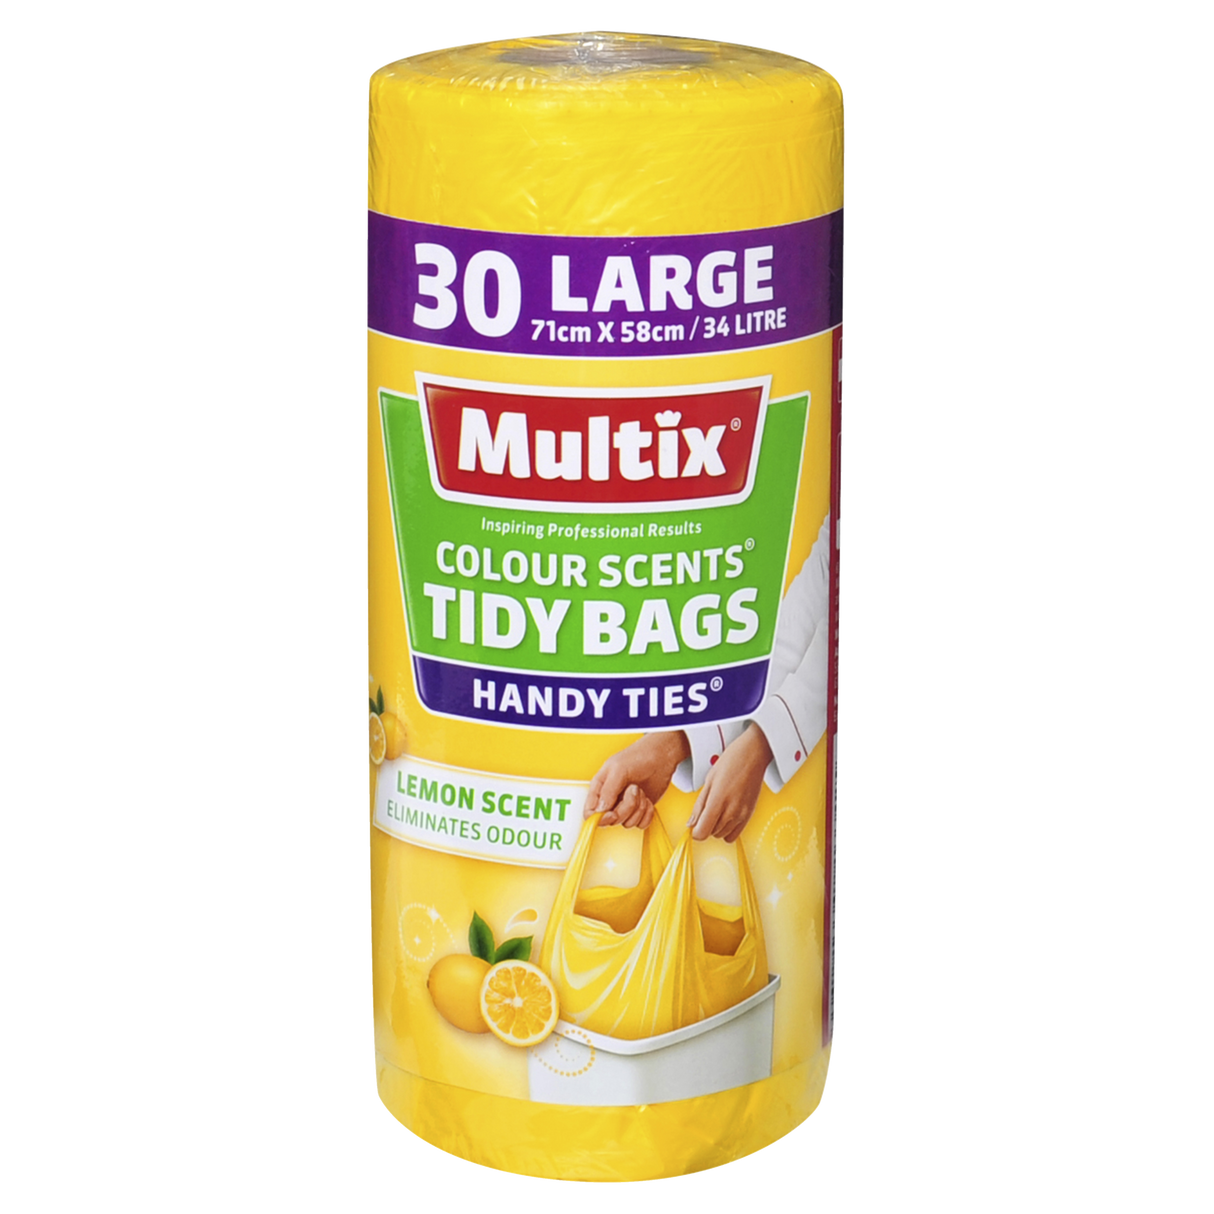 Multix Colour Lemon Scents Handy Ties Tidy Bags Large 30 Pack